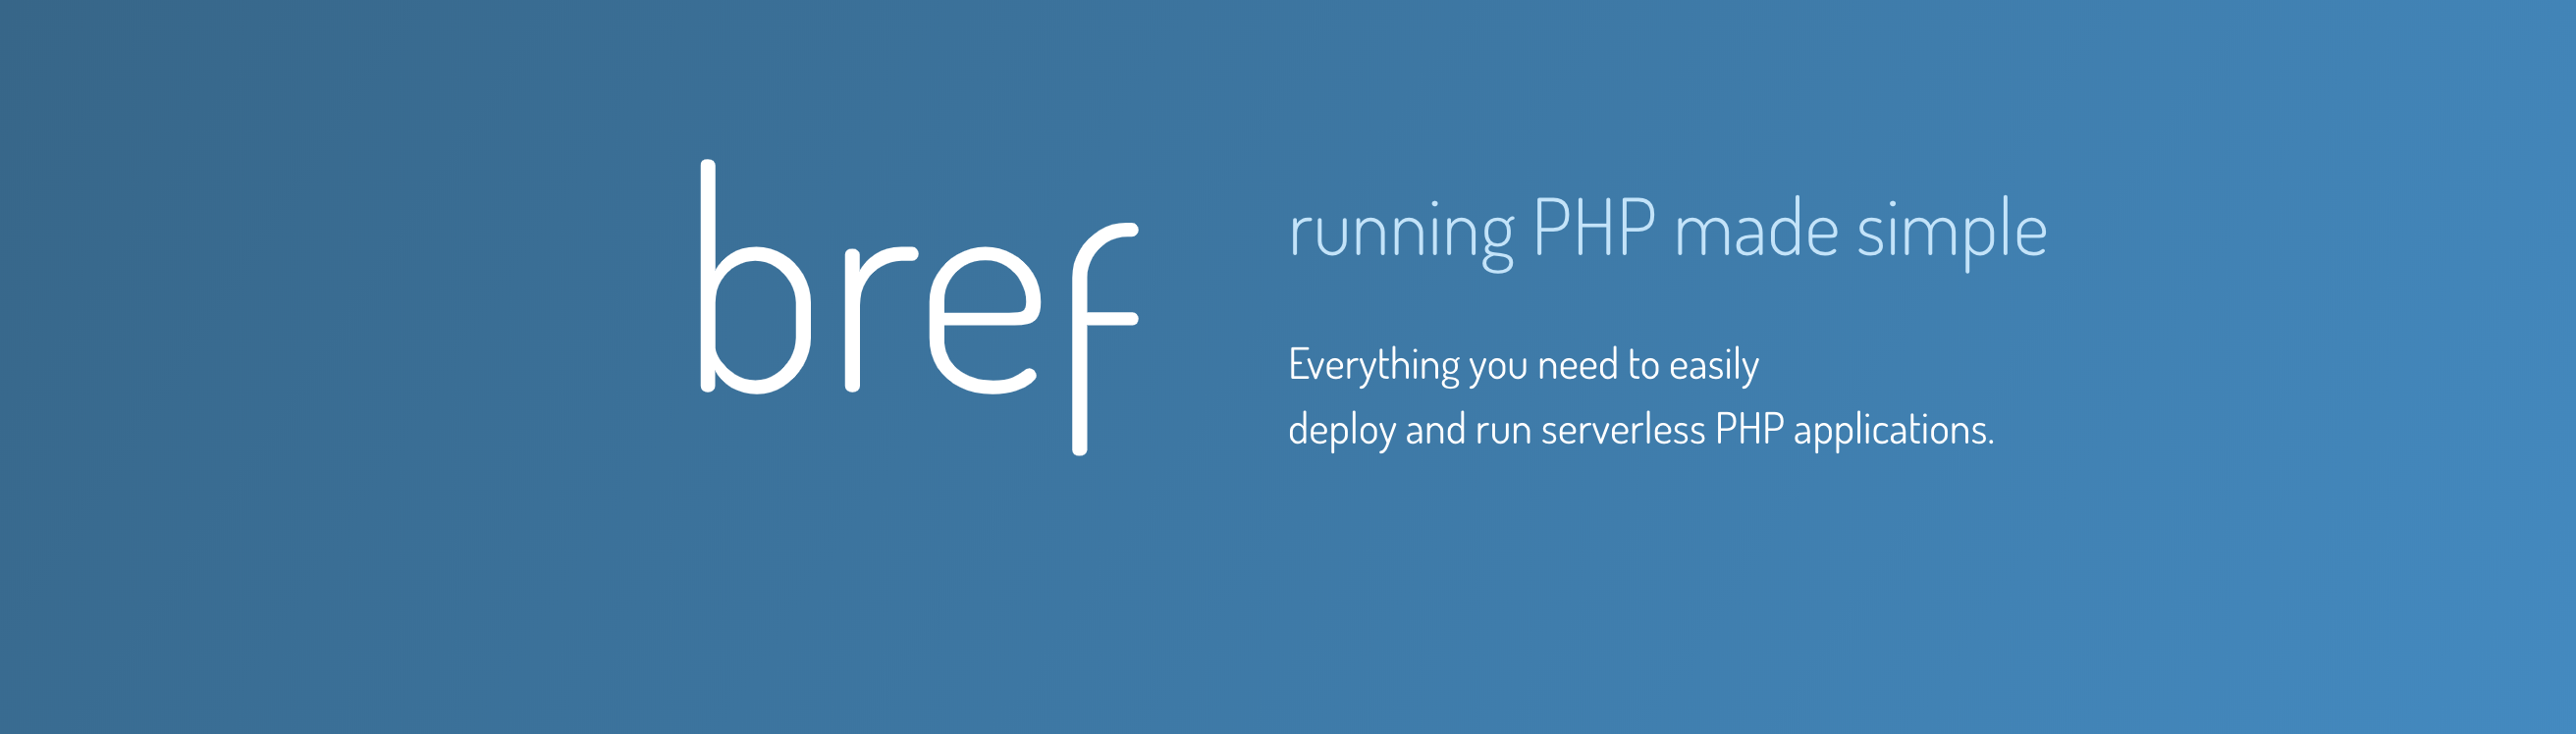 ลองทำ PHP Serverless ง่ายๆ ด้วย bref